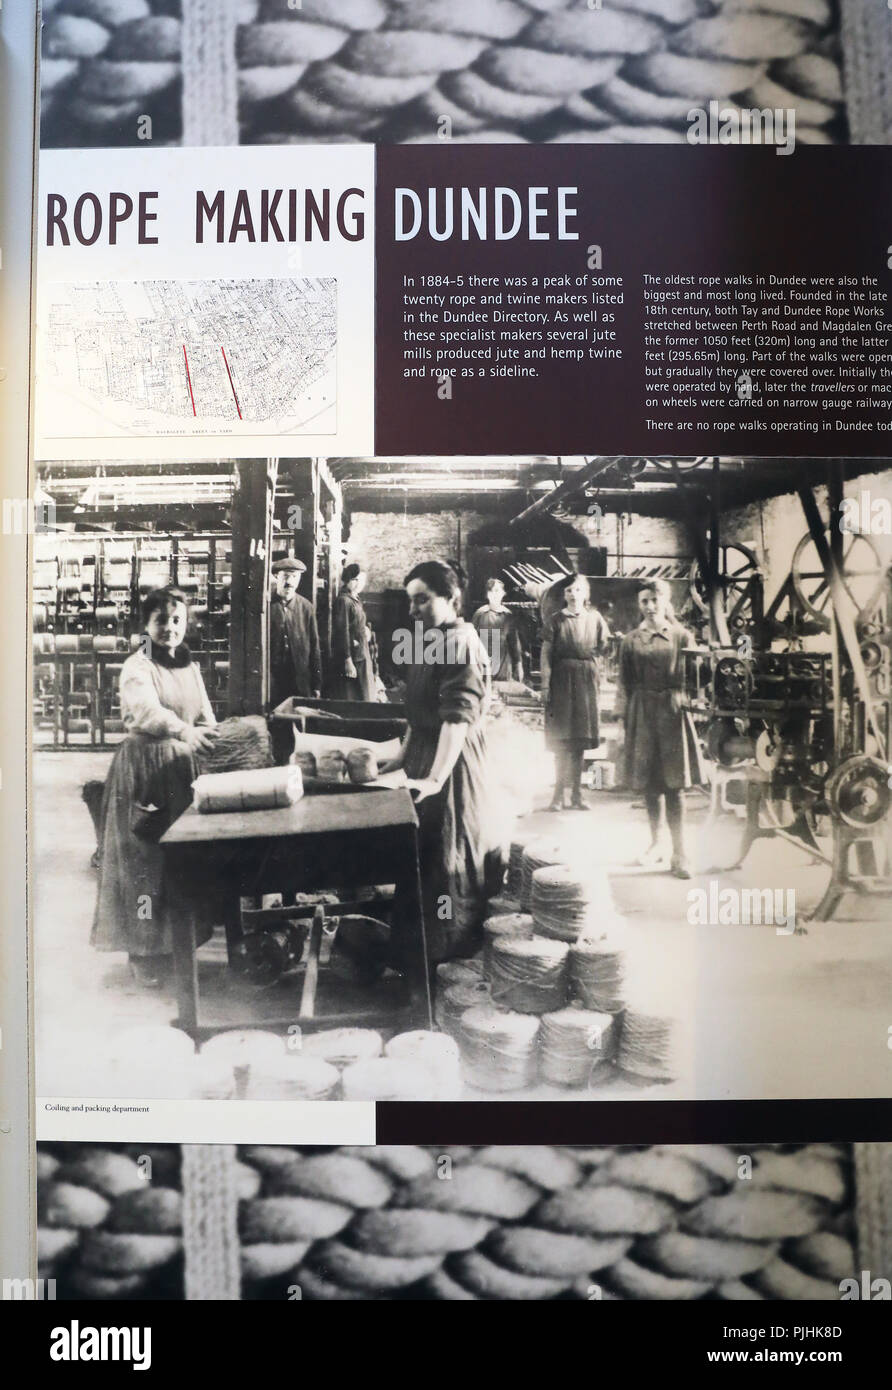 Verdant Works, un mulino restaurato che mostra le fasi di locale 19th del XX secolo la produzione di iuta, una grande industria a Dundee, su Tayside, Scotland, Regno Unito Foto Stock